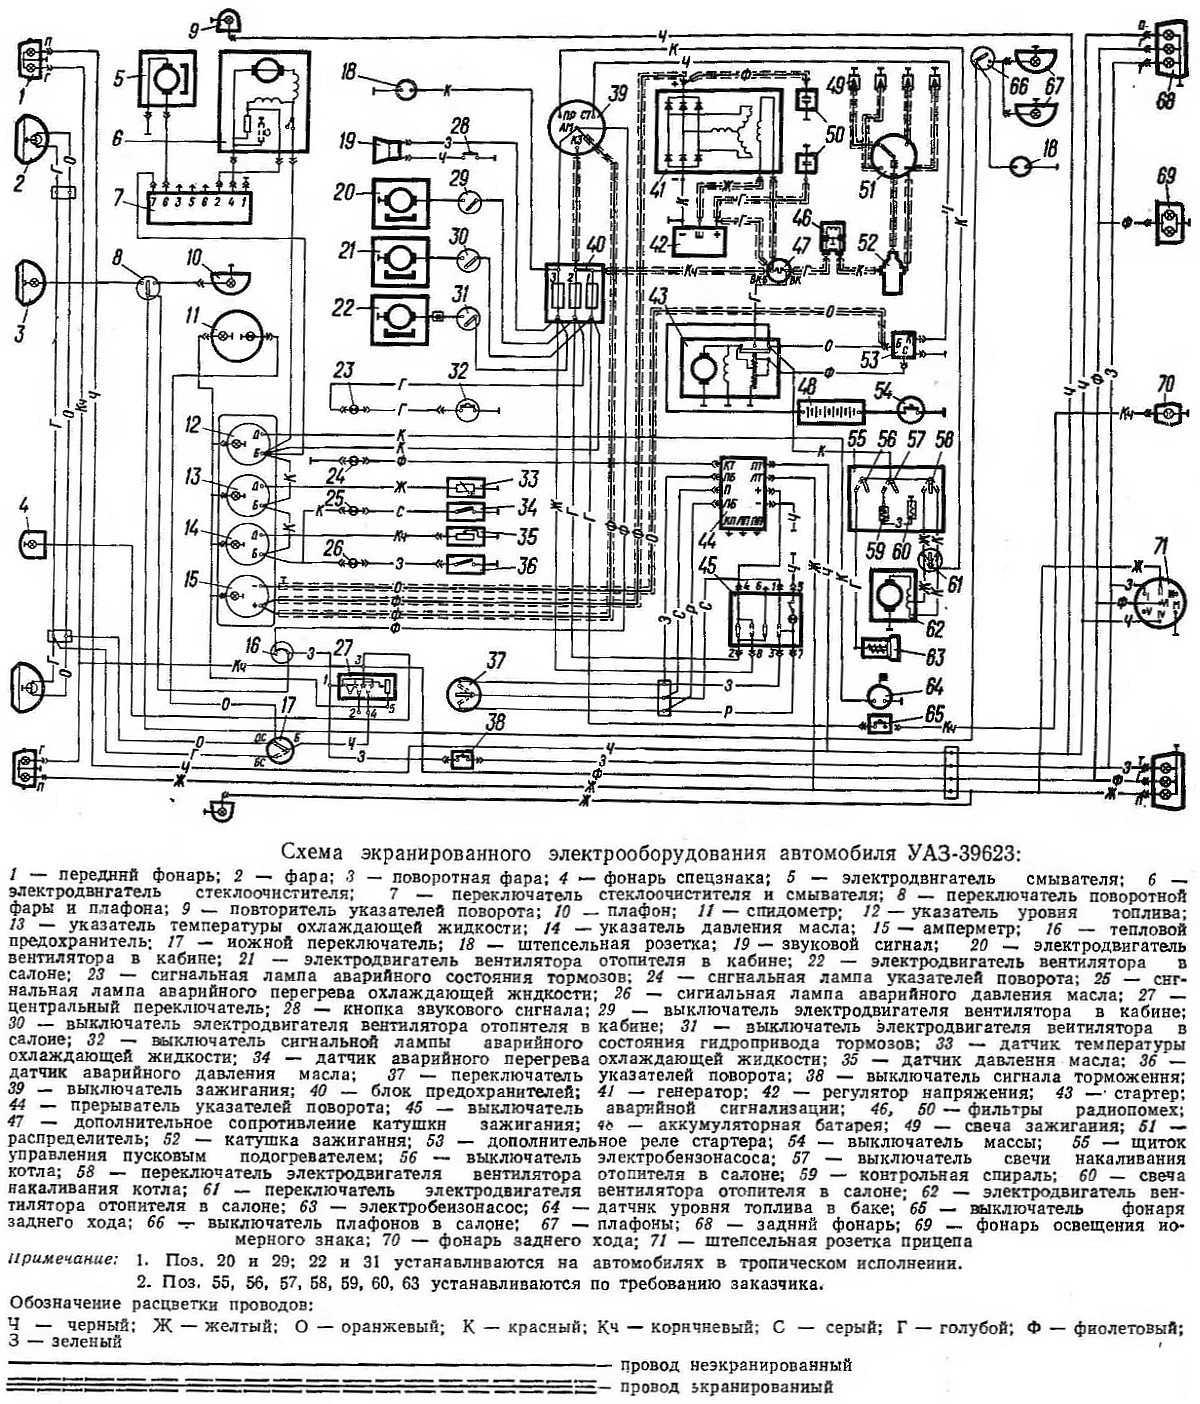 Схема электропроводки уаз 31514: особенности электросхемы